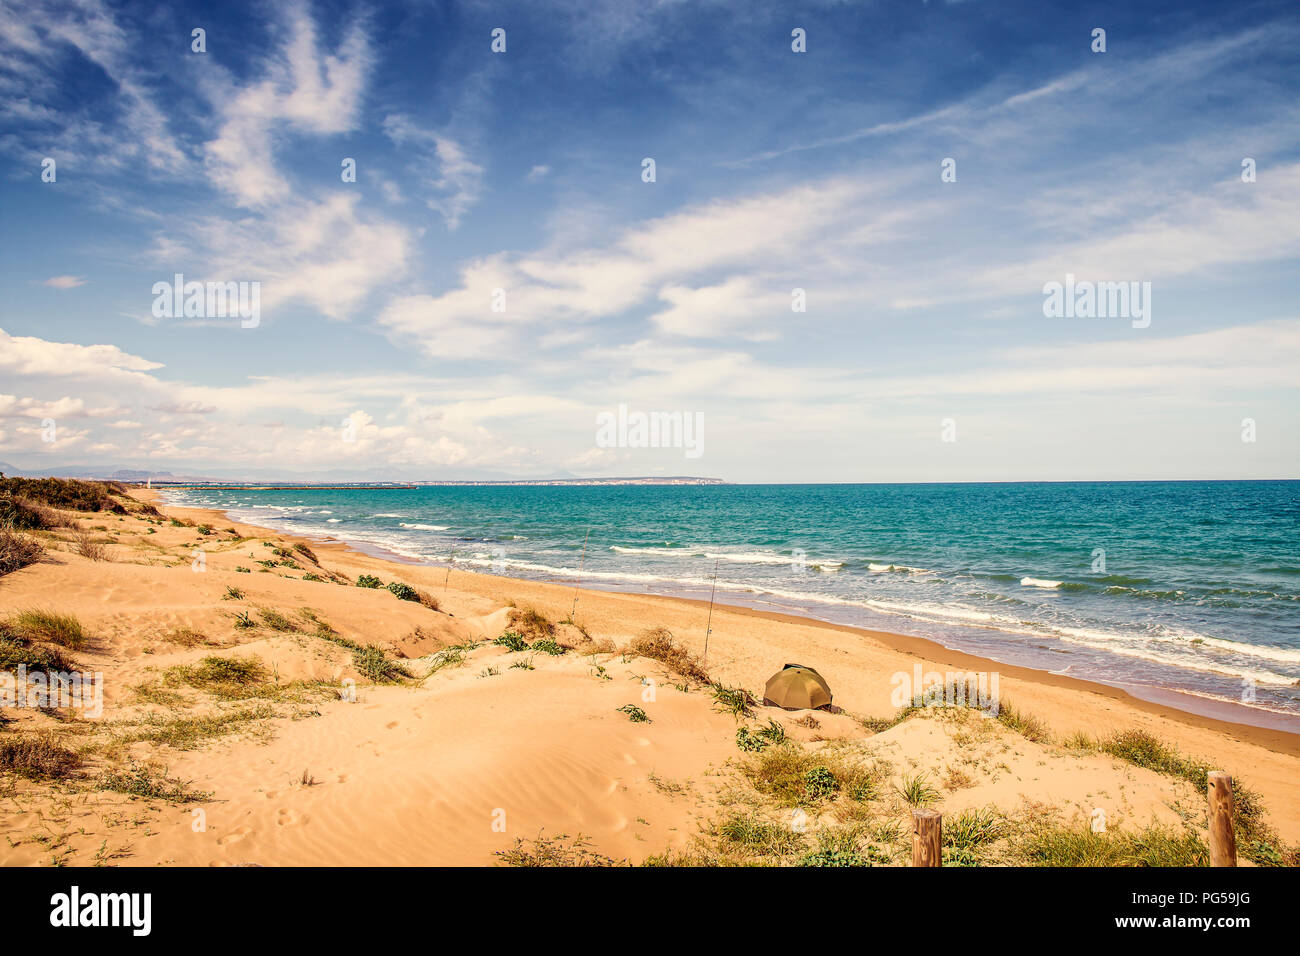 fishing in solitude Guardamar del Segura Beach with sand dunes.Alicante, Spain Stock Photo